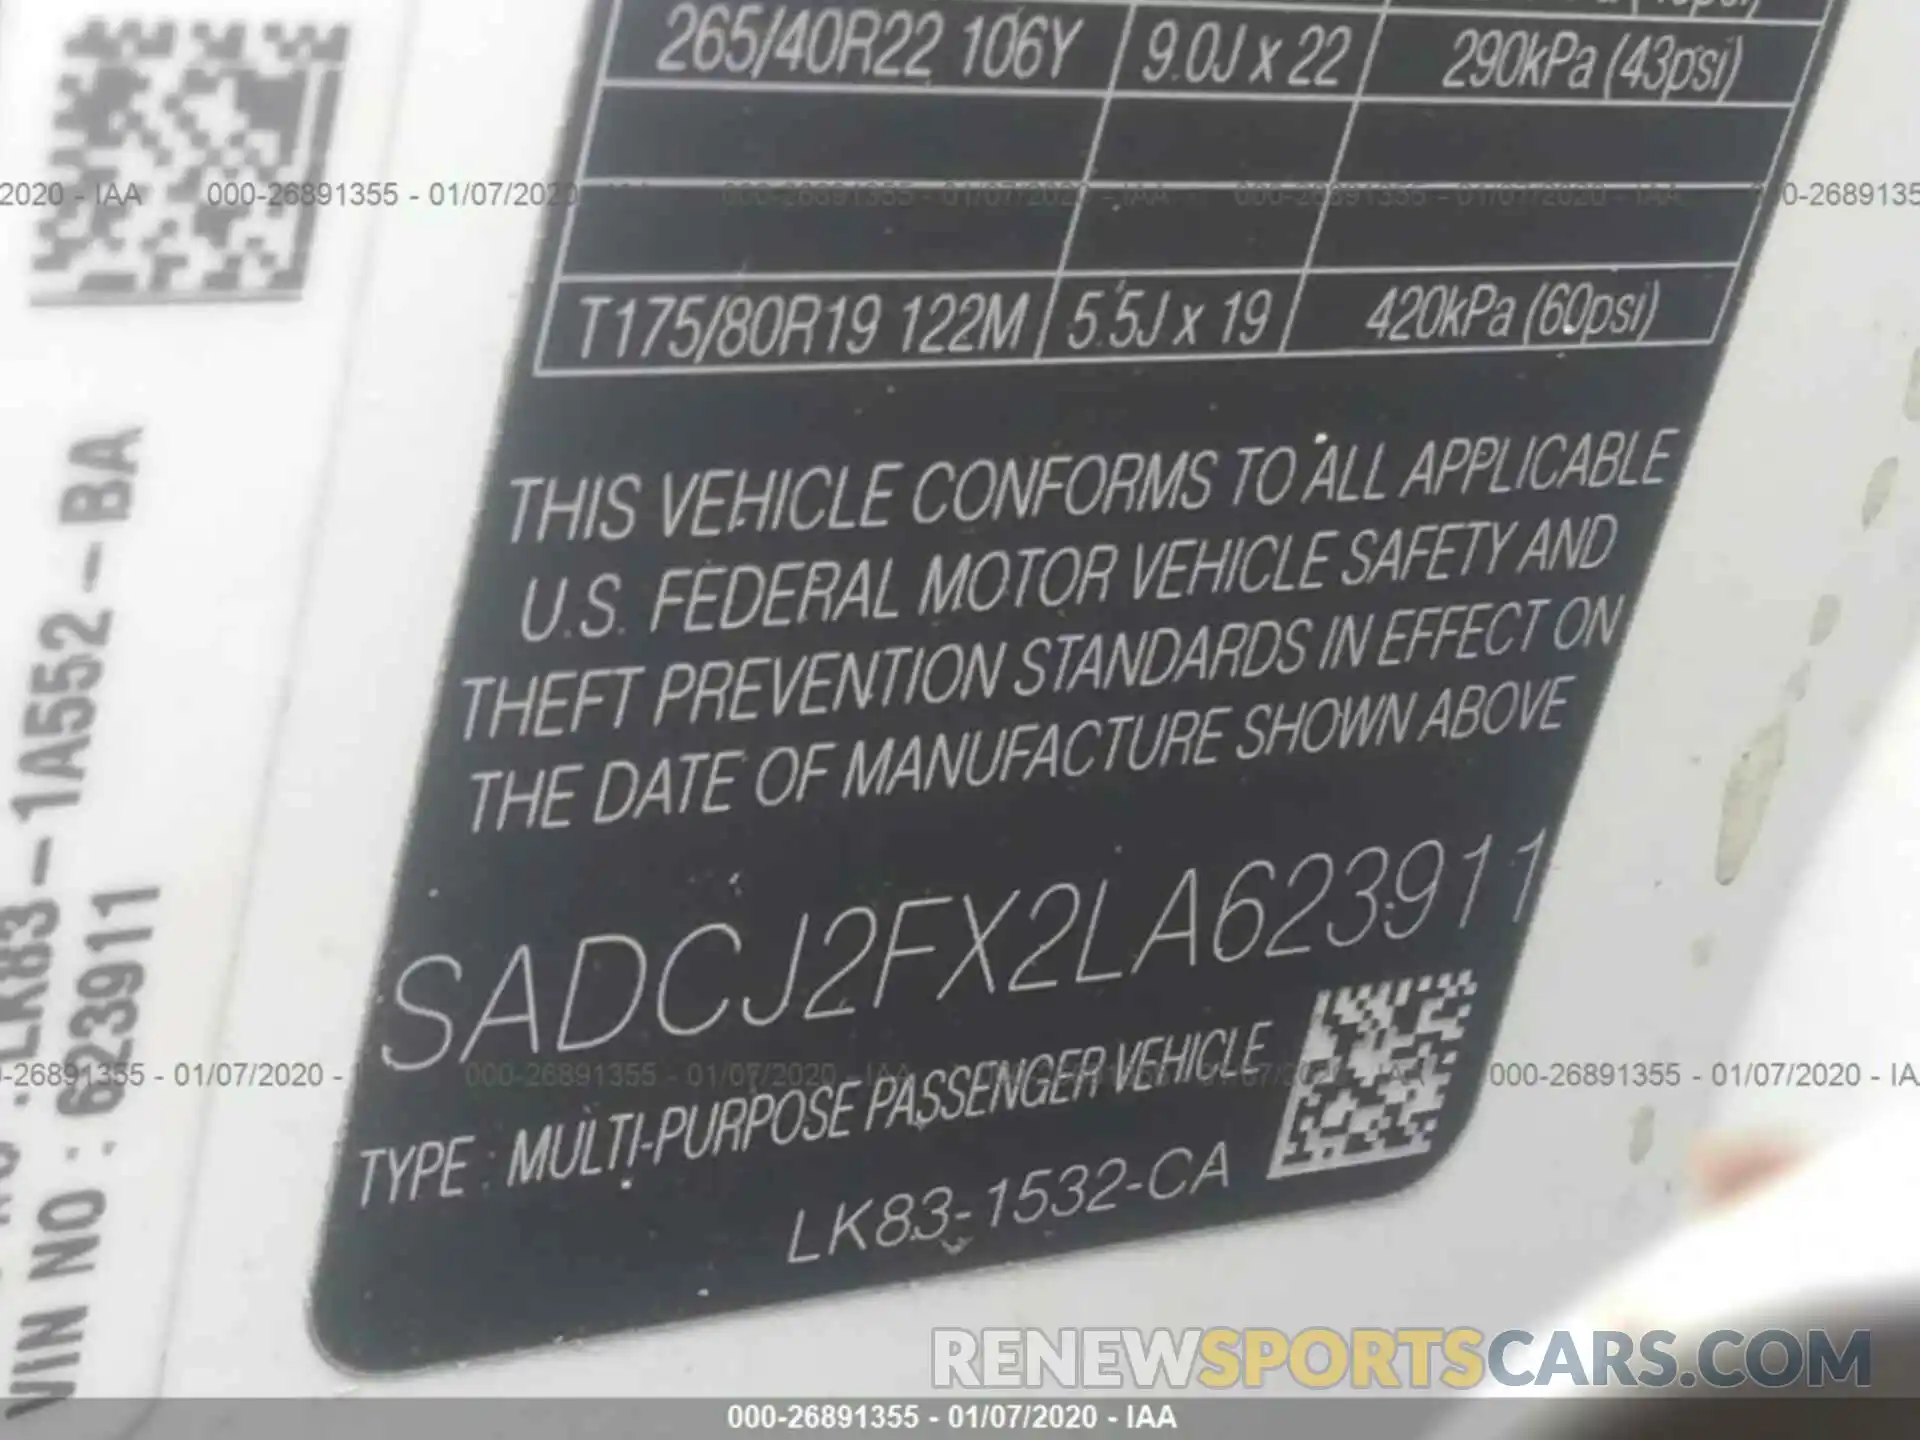 9 Фотография поврежденного автомобиля SADCJ2FX2LA623911 JAGUAR F-PACE 2020